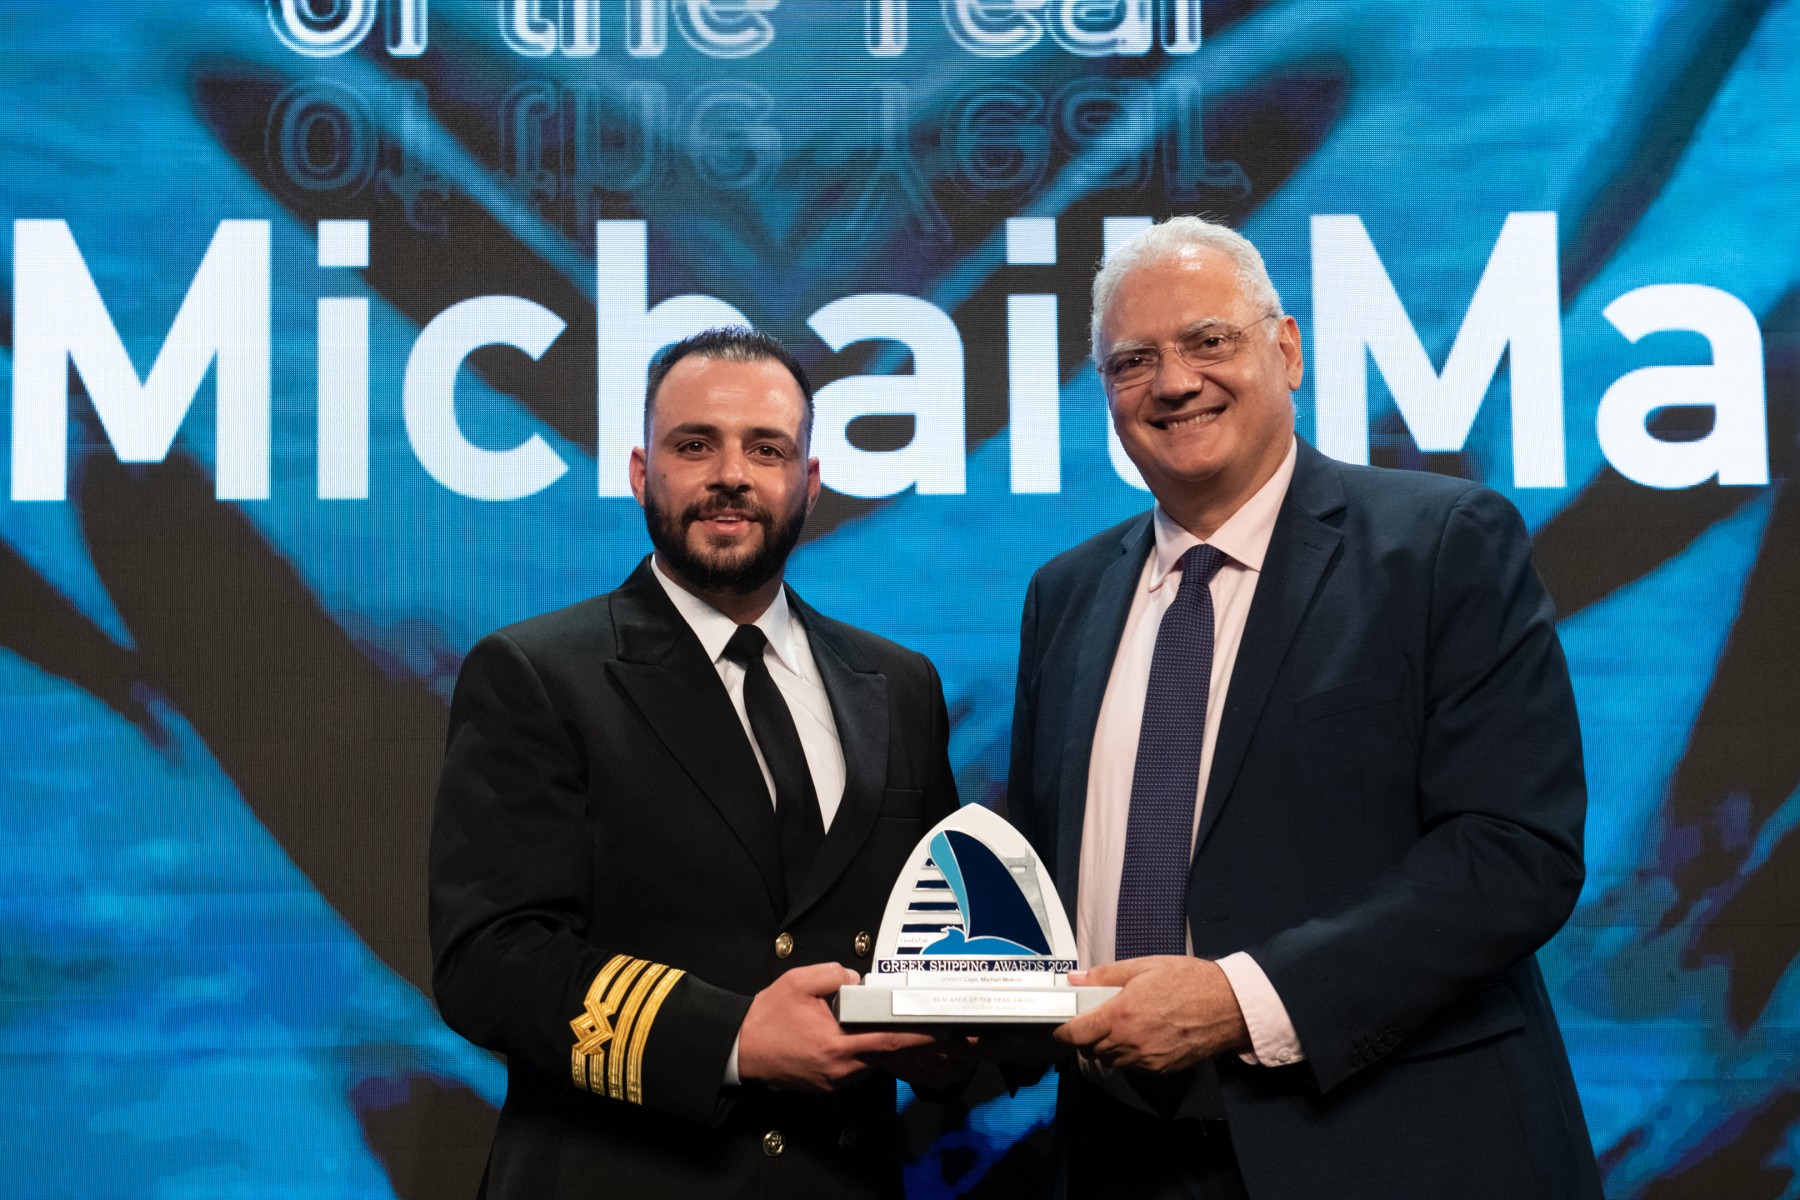 Ναυτικός της Χρονιάς αναδείχθηκε ο καπτ. Μιχαήλ Μακρής της Seajets, καπετάνιος του καταμαράν Sea Jet 2, για τη διάσωση 18 επιβατών από το Αιγαίο μετά τη βύθιση του γιοτ τους τον Αύγουστο του 2021